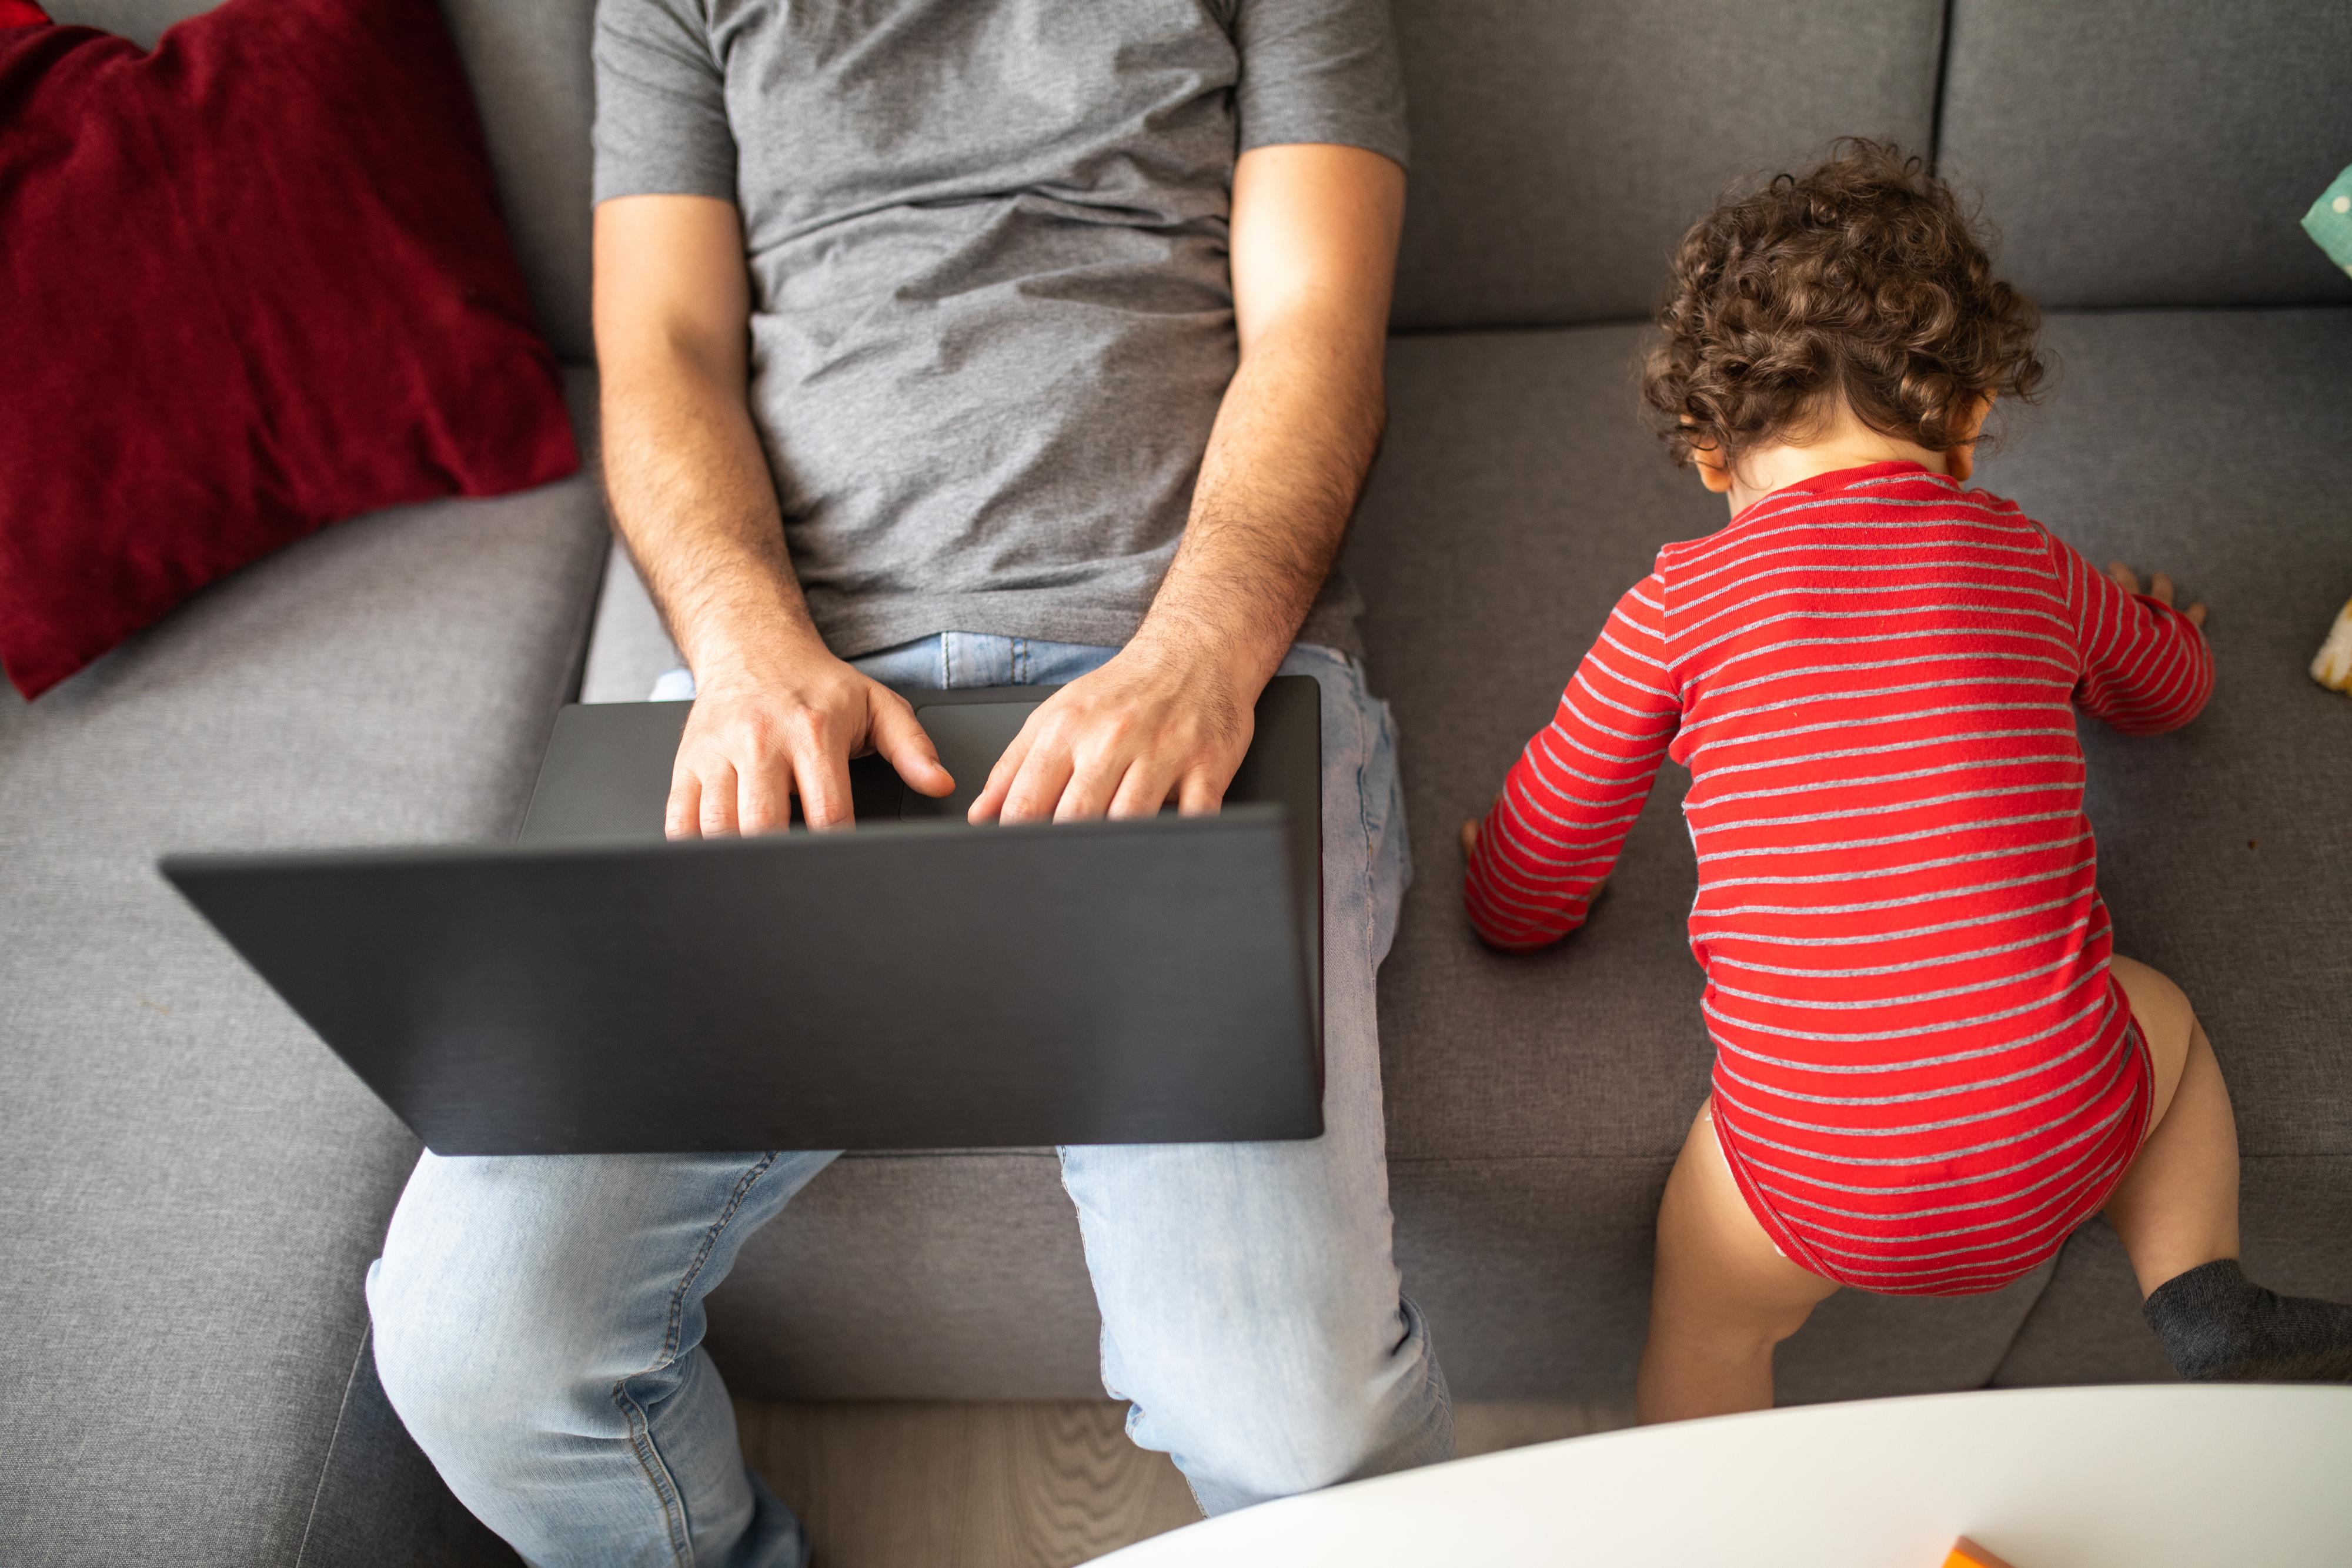 Mies työskentelee kotona kannettavalla tietokoneella, taaperoikäinen lapsi leikkii vieressä sohvalla.